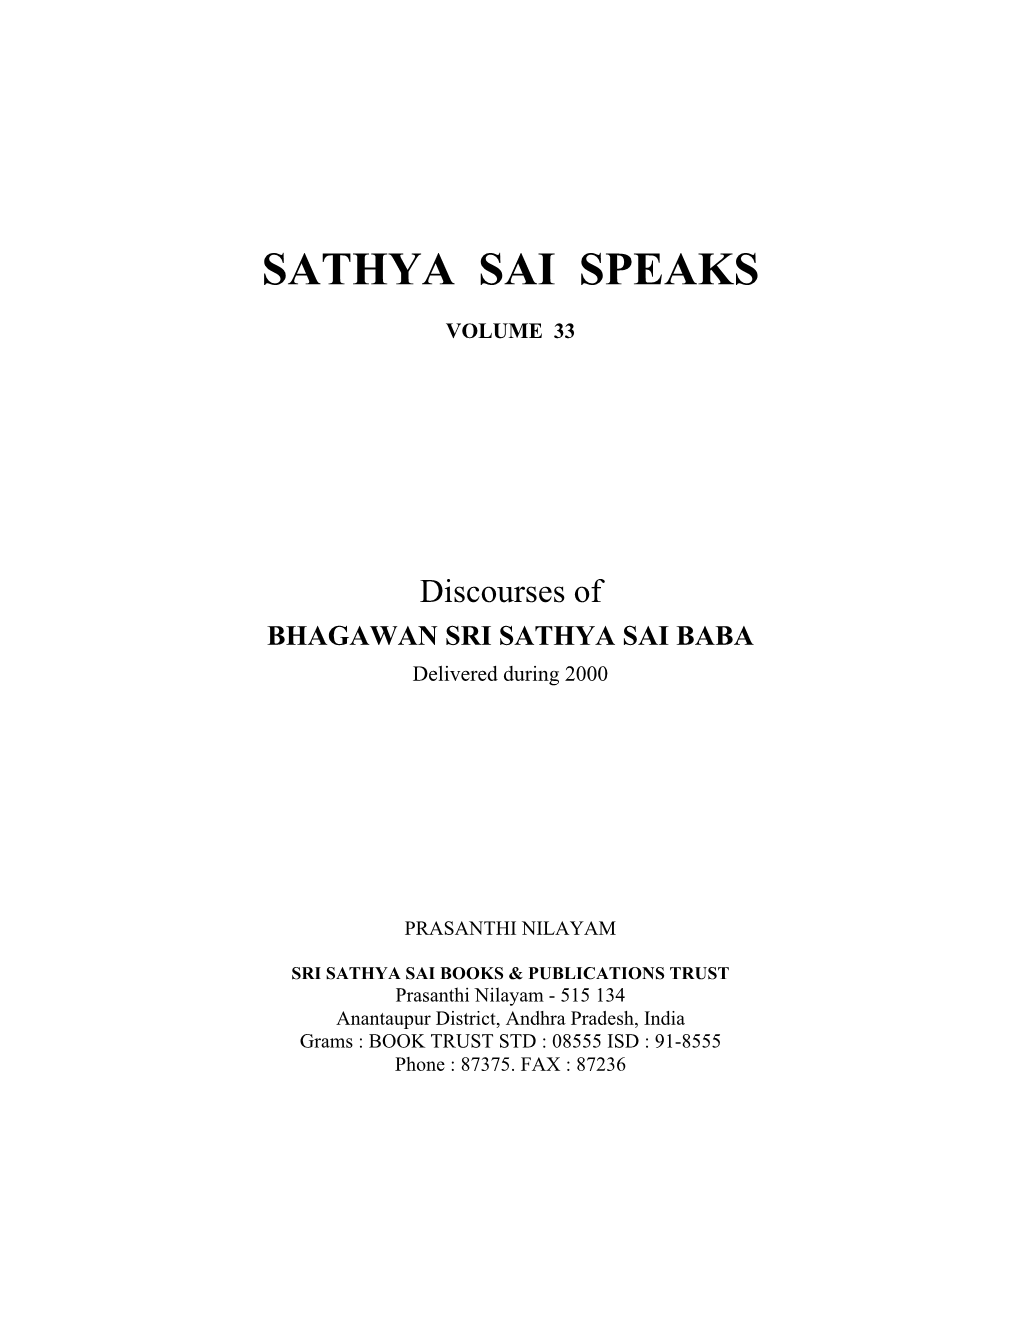 Sathya Sai Speaks